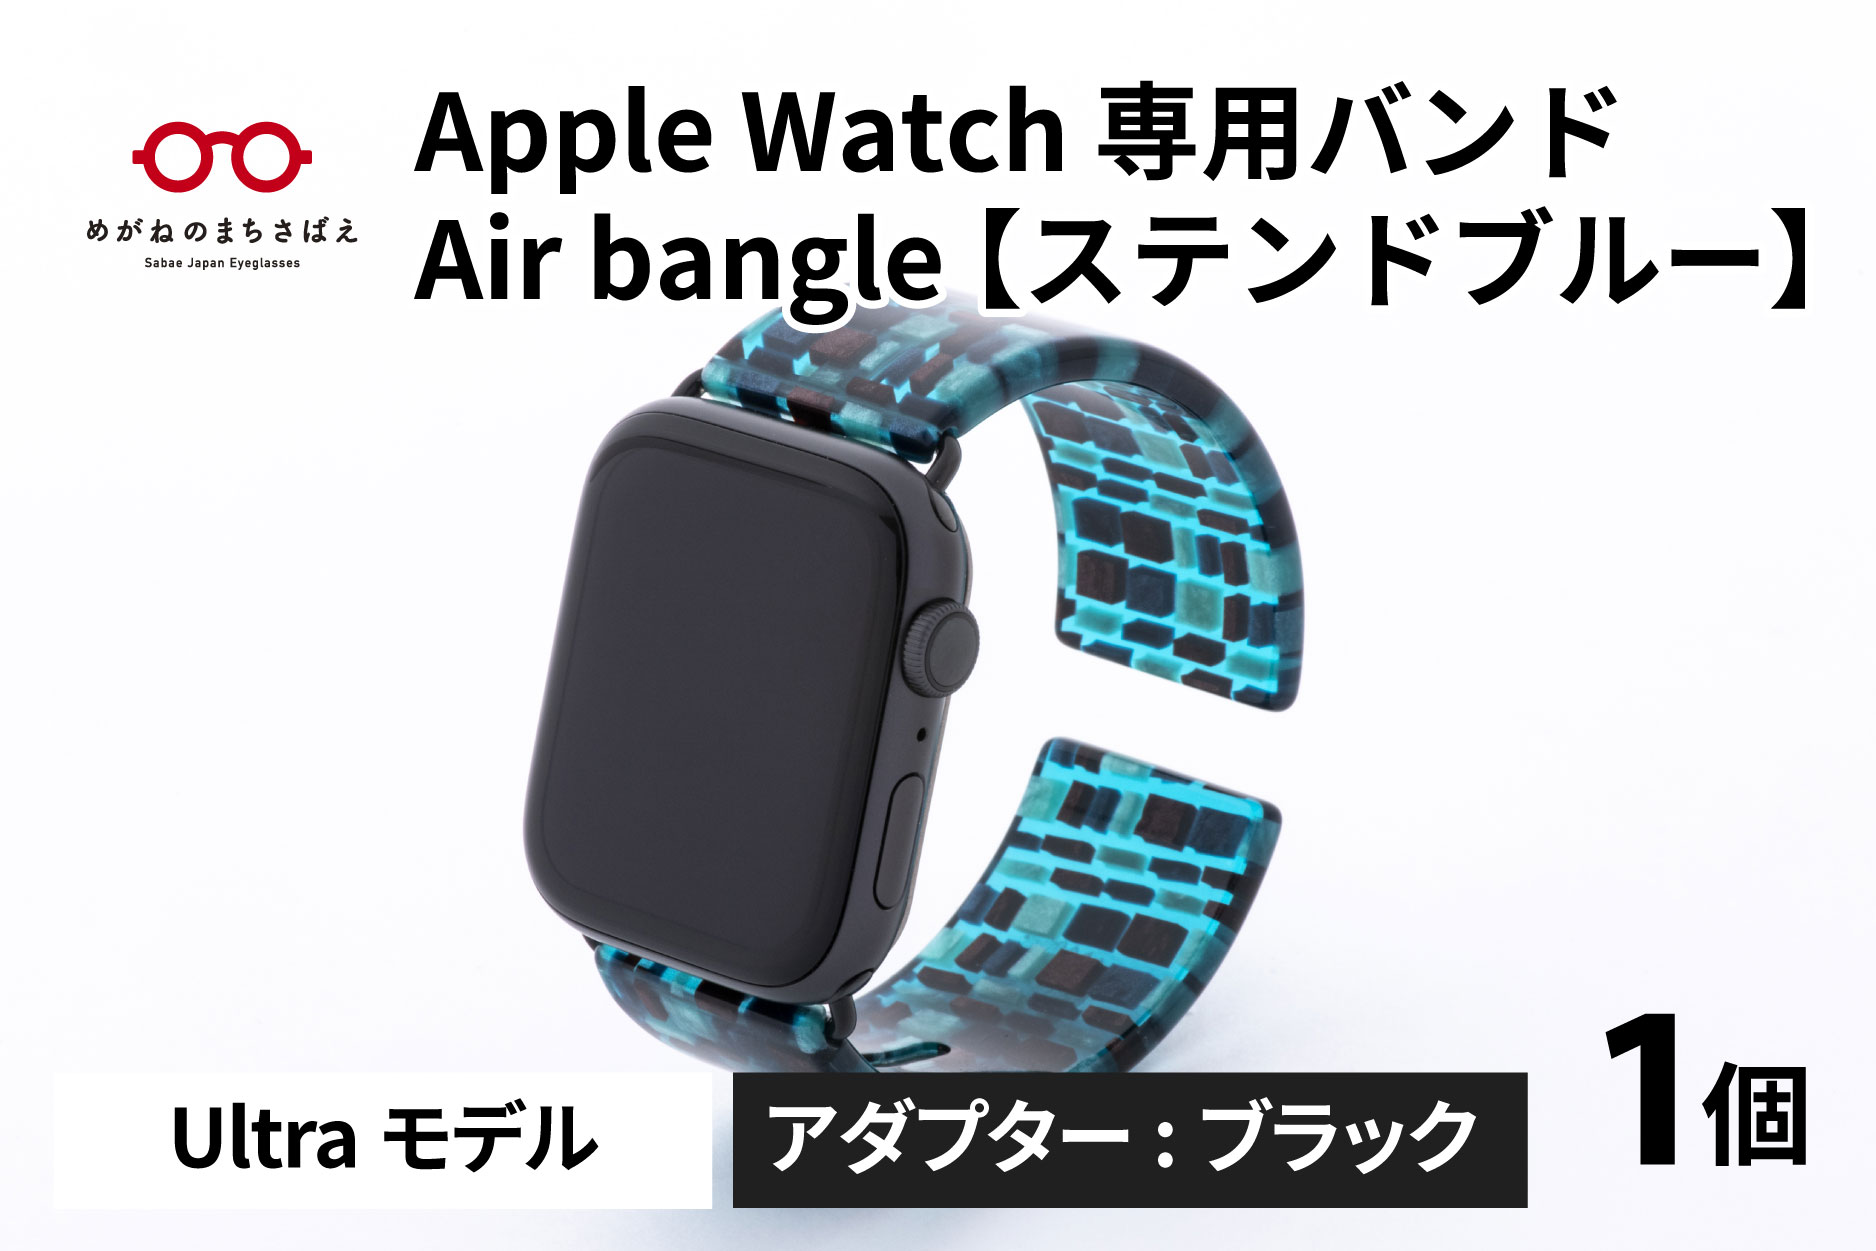 Apple Watch 専用バンド 「Air bangle」 ステンドブルー（Ultraモデル）アダプタ ブラック